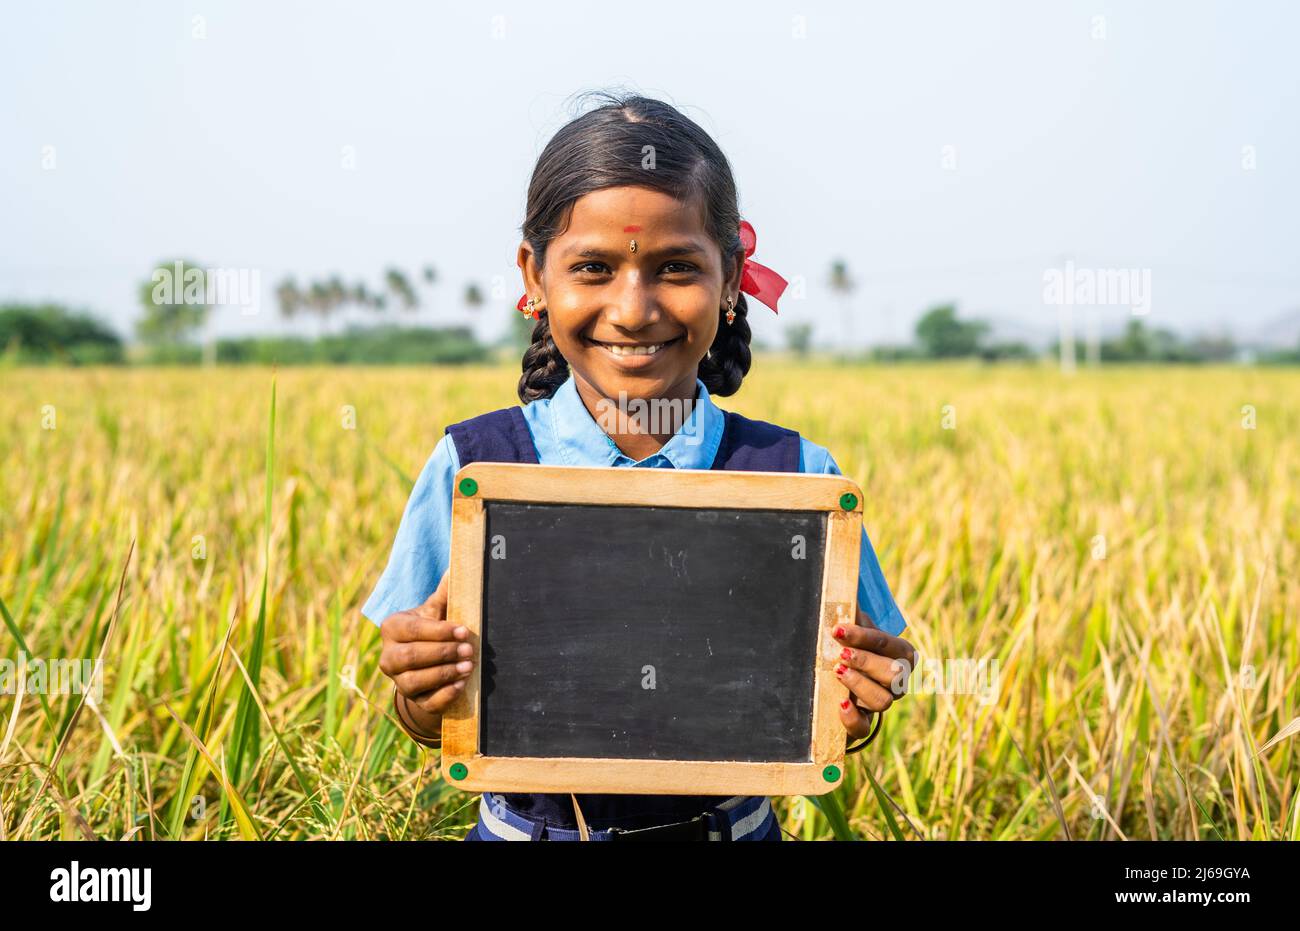 Feliz escuela niña sonriente sosteniendo pizarra vacía cerca del campo de arroz - concepto de educación, aprendizaje y empoderamiento de la infancia Foto de stock